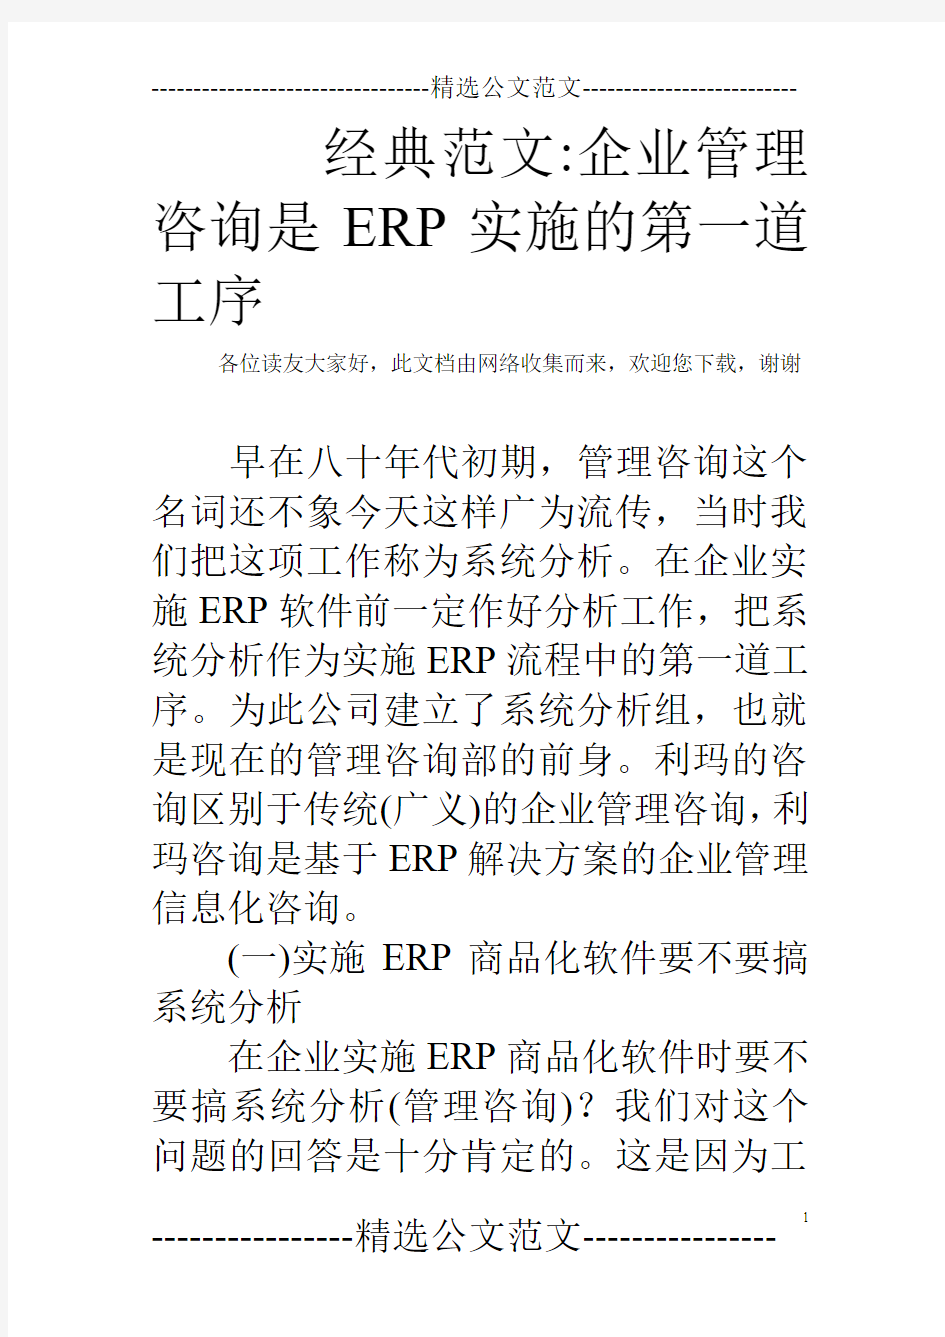 经典范文-企业管理咨询是ERP实施的第一道工序 